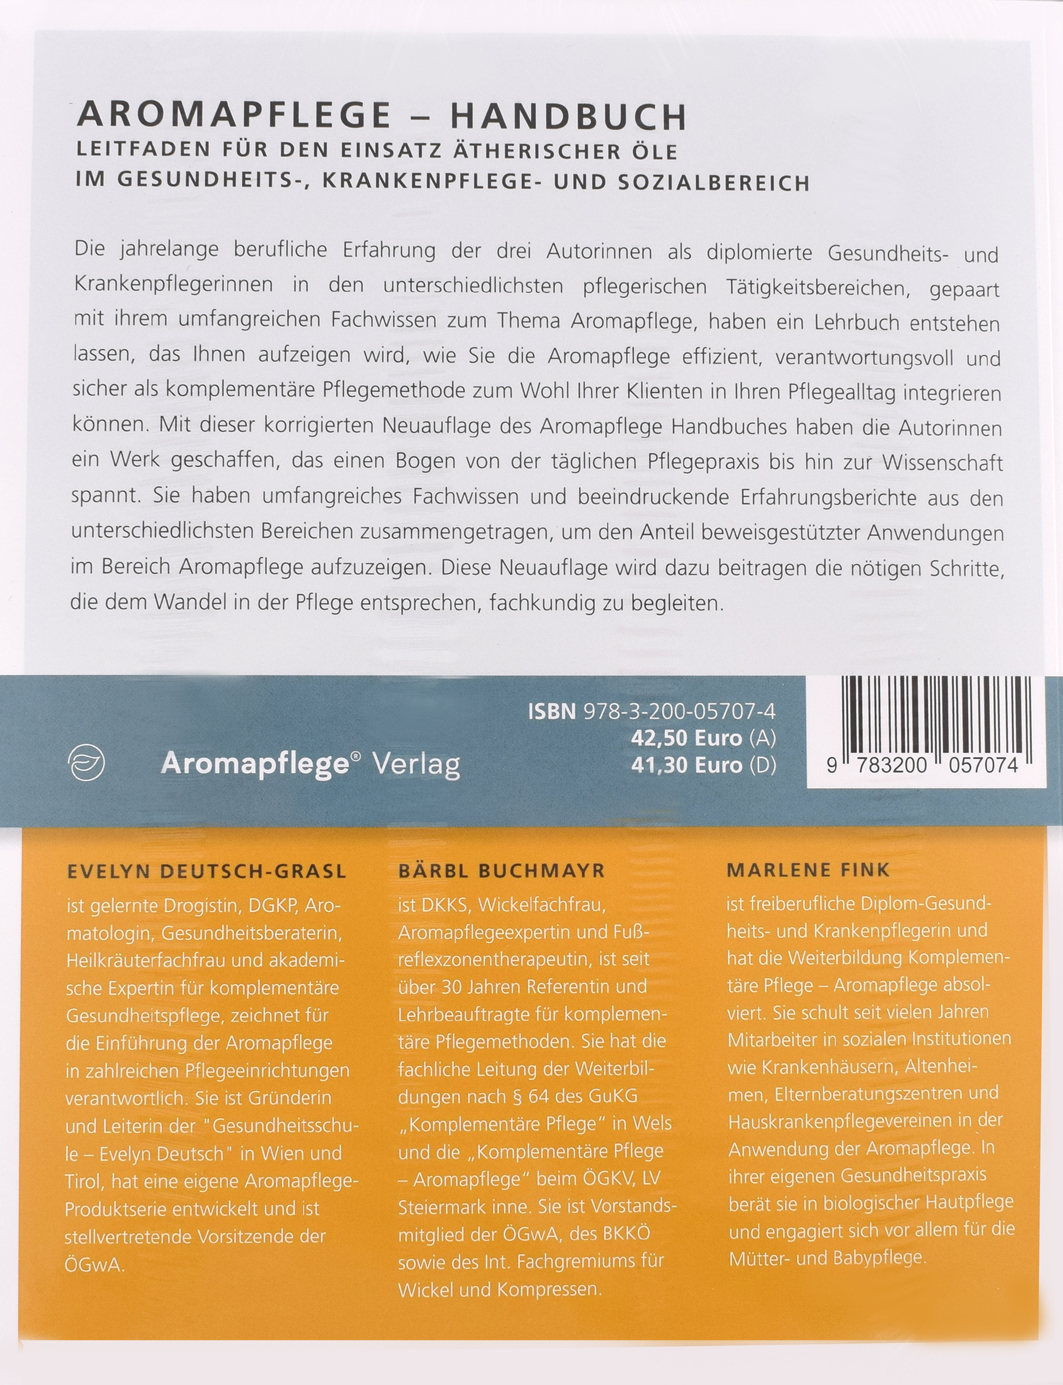 Aromapflege Handbuch - Evelyn Deutsch-Grasl u.a.